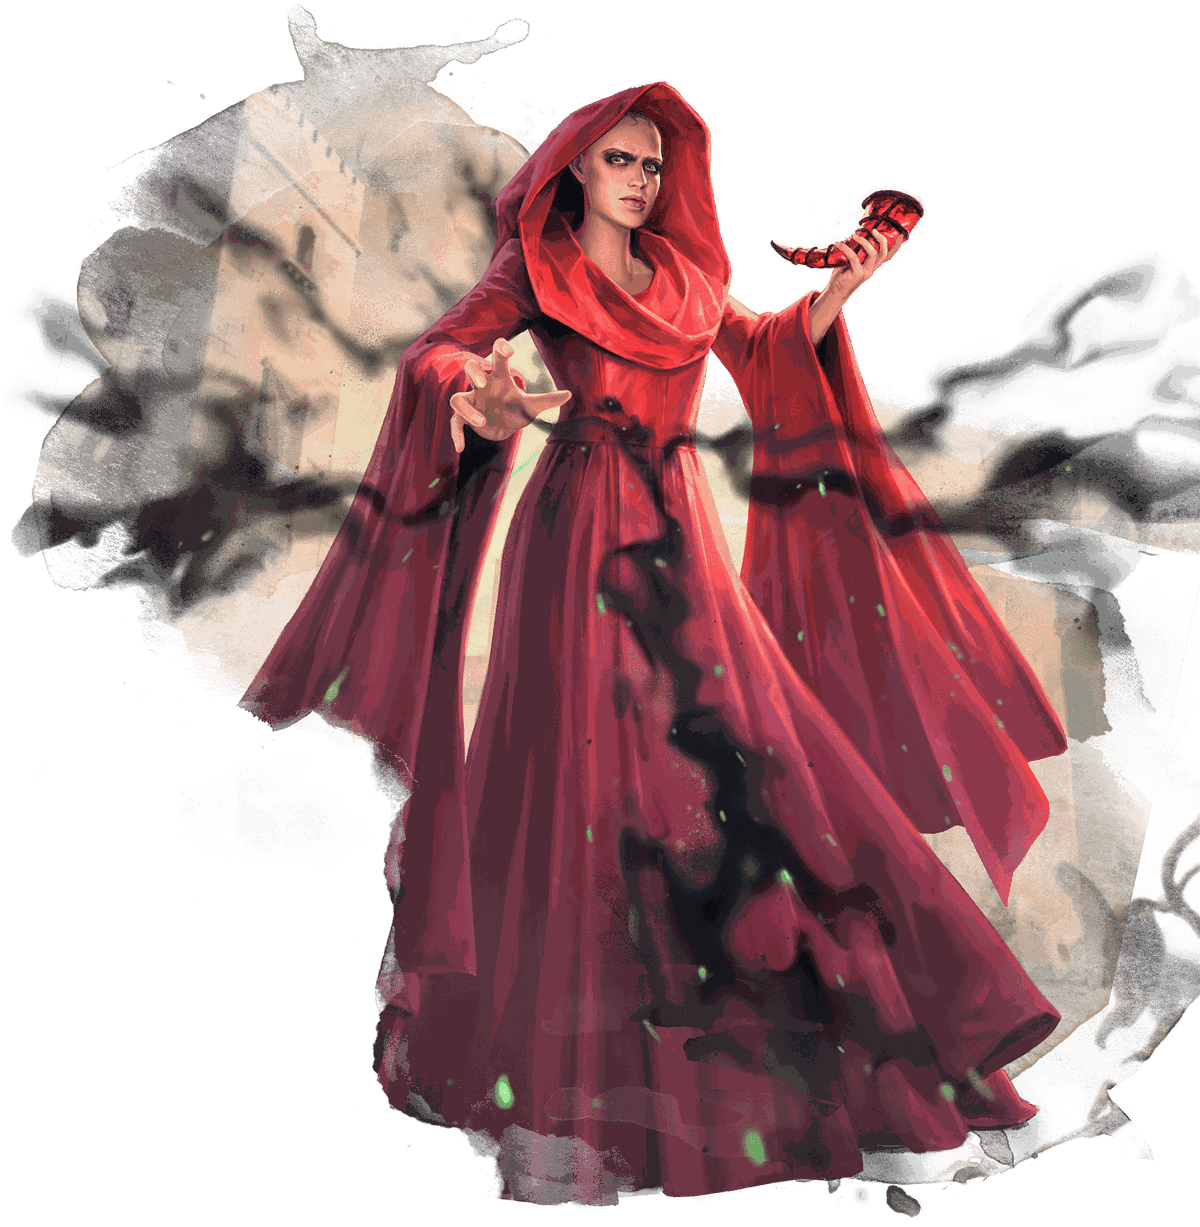 tête de marguerite en tant que mystérieux sorcier rouge.  elle porte de longues robes rouges fluides, sa tête enveloppée d'une capuche.  autour d'elle, une fumée noire s'accumule.  elle porte une corne mystérieuse dans une main